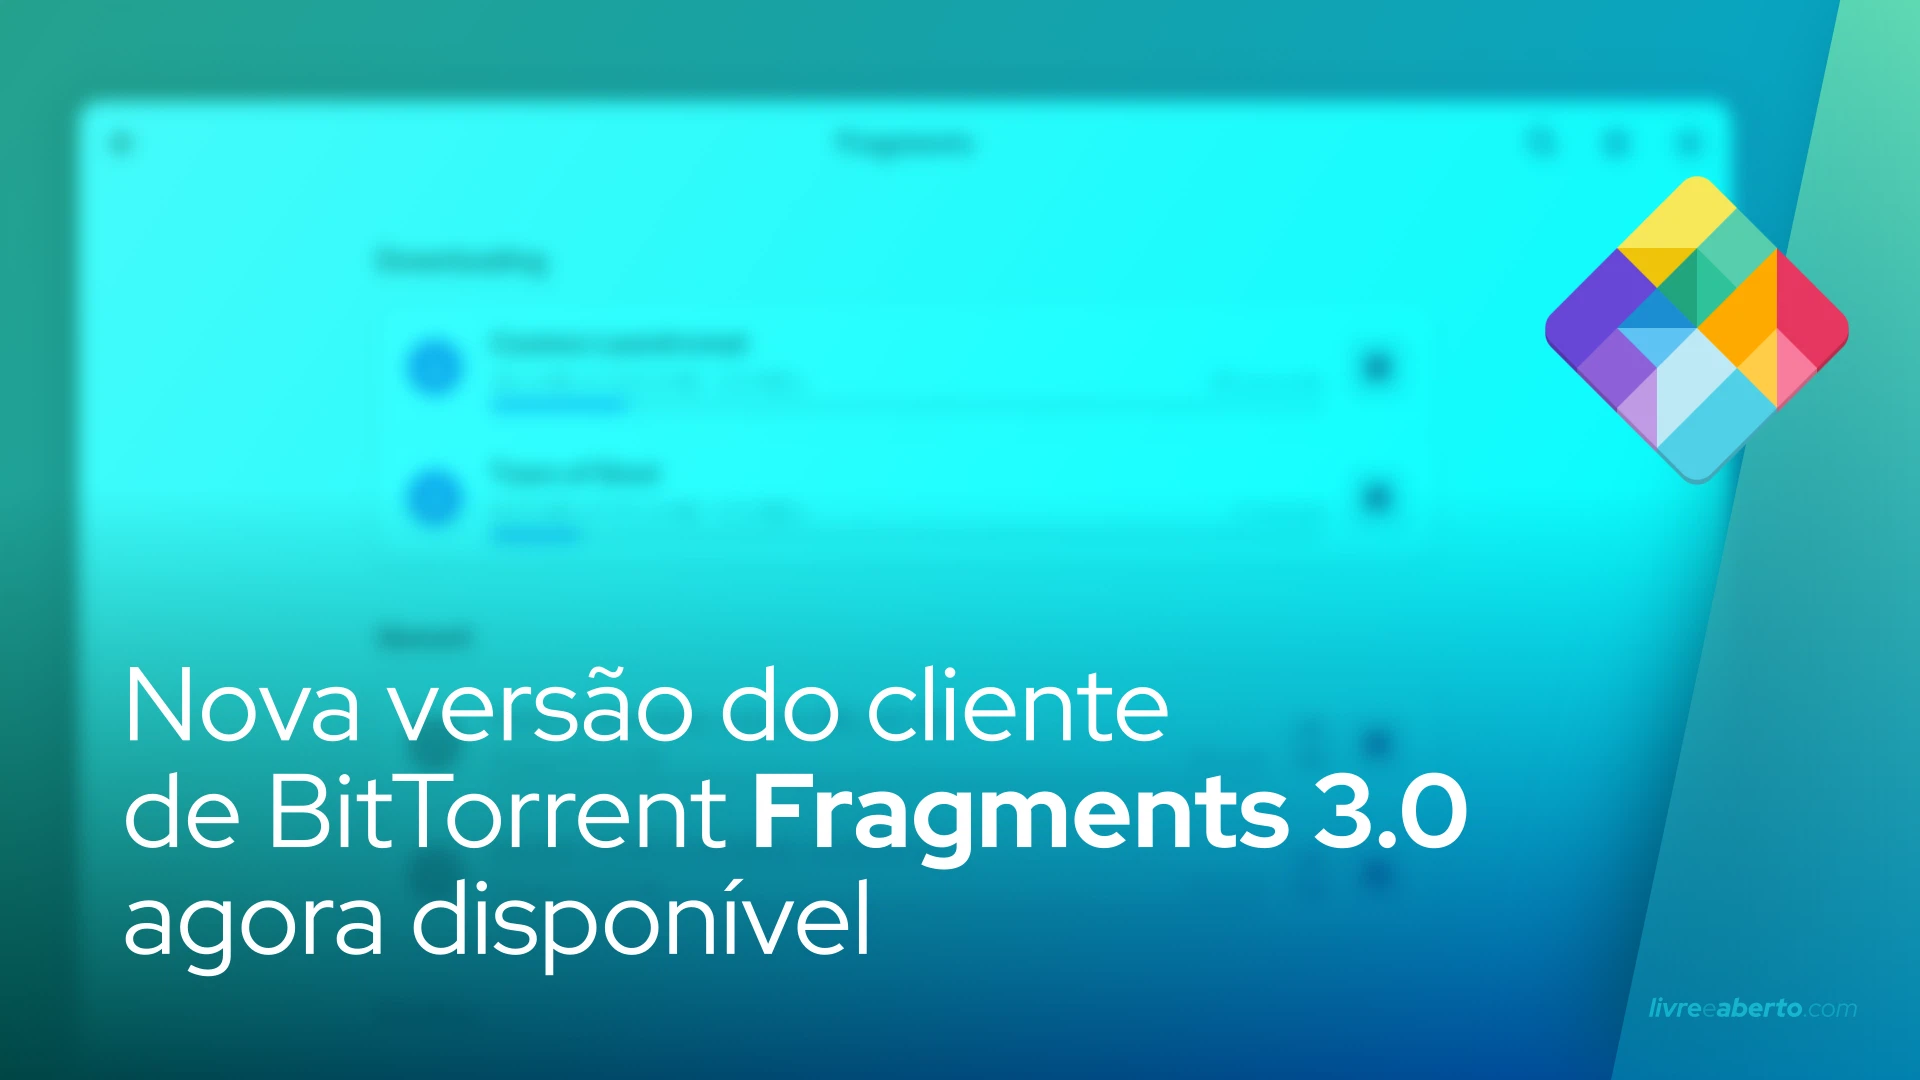 Nova versão do cliente de BitTorrent Fragments 3.0 agora disponível